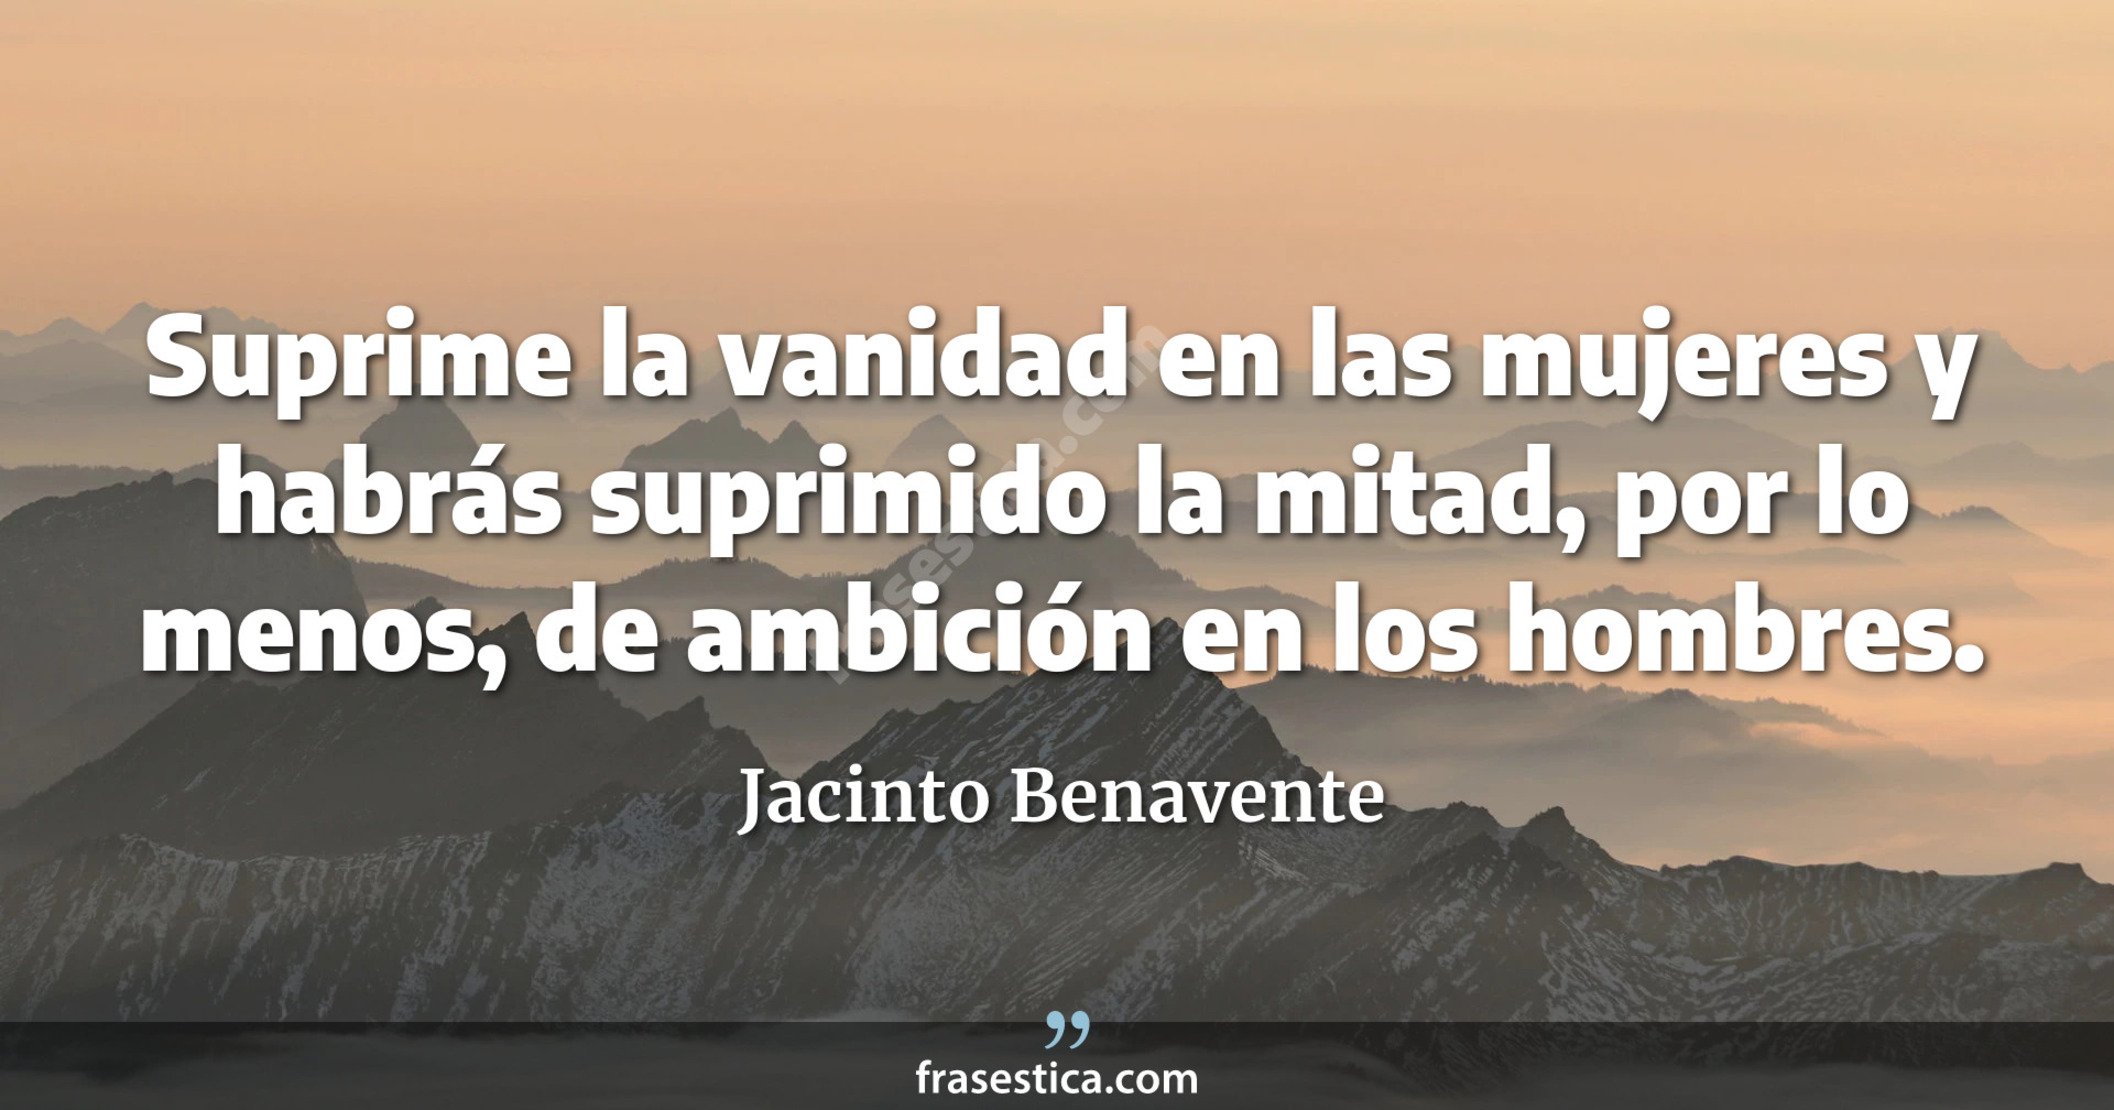 Suprime la vanidad en las mujeres y habrás suprimido la mitad, por lo menos, de ambición en los hombres. - Jacinto Benavente